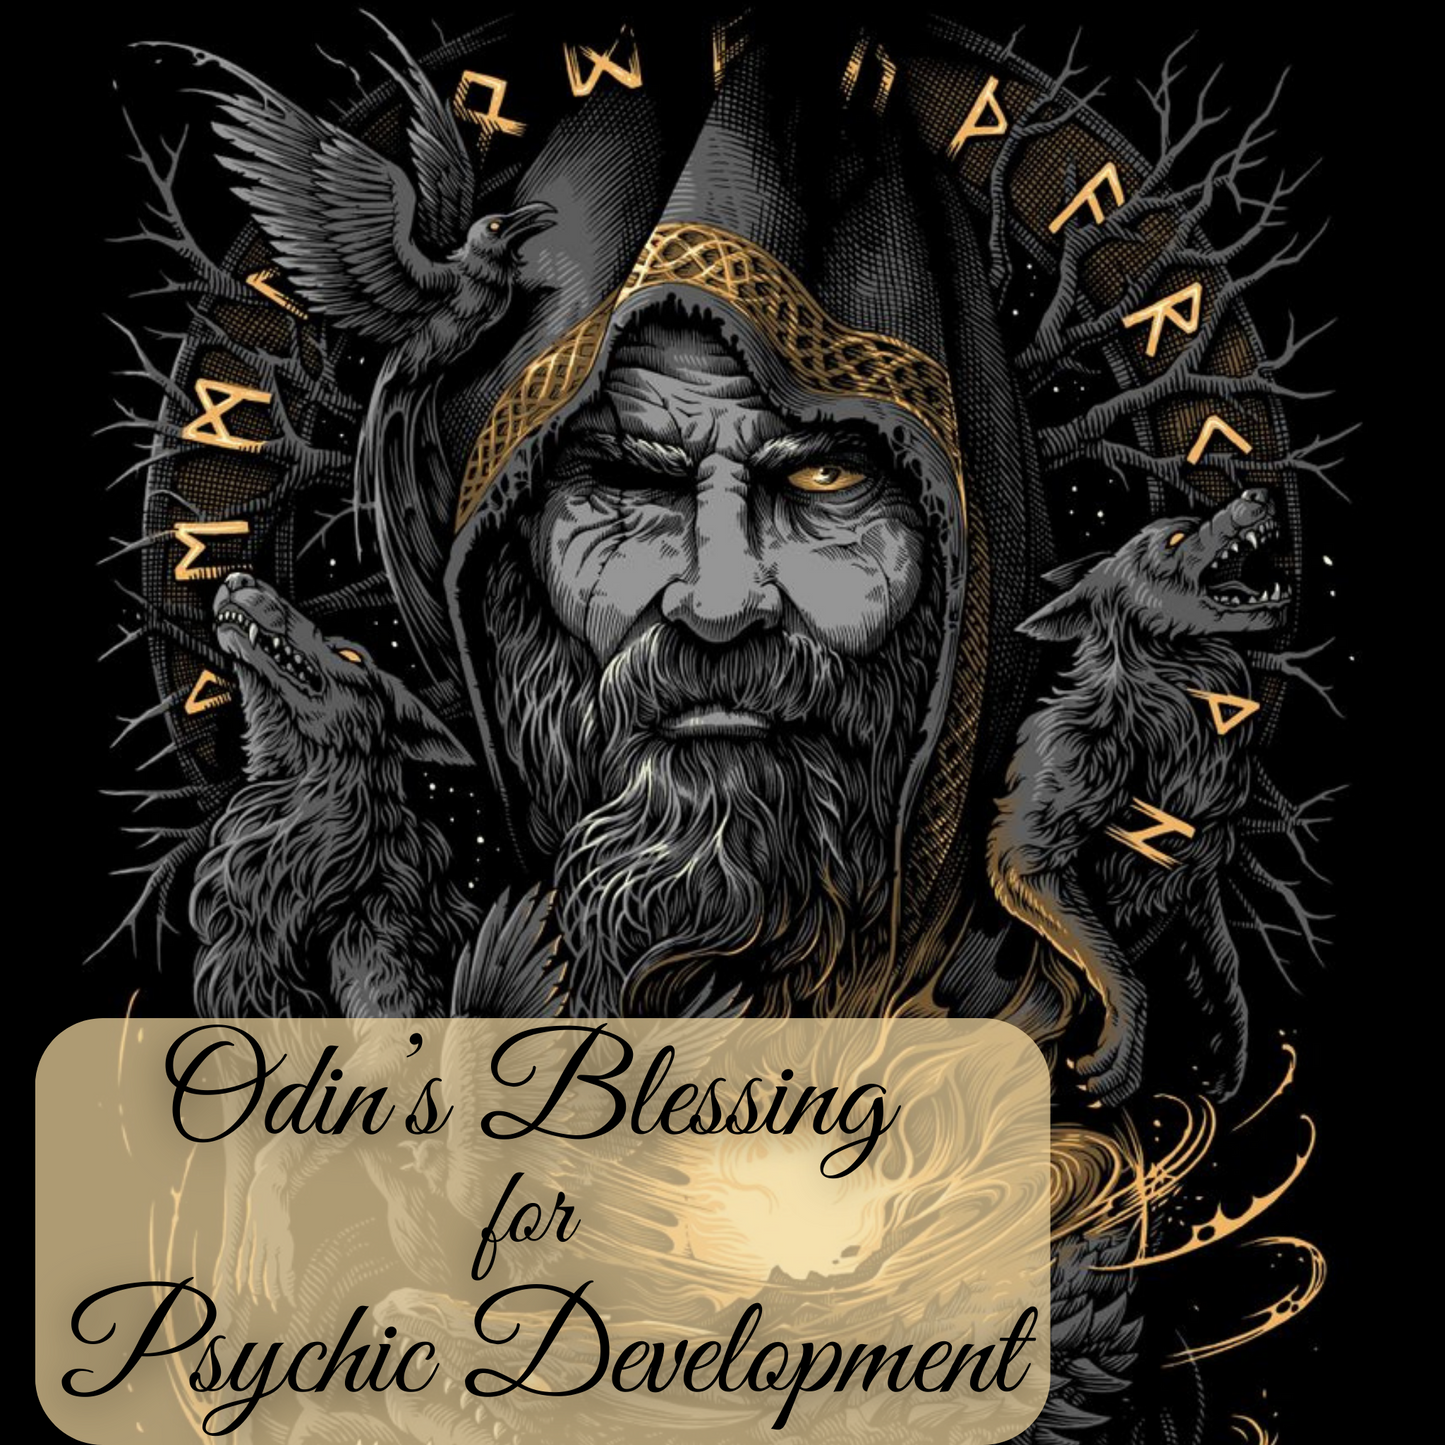 Odin's Blessing for Psychic Development